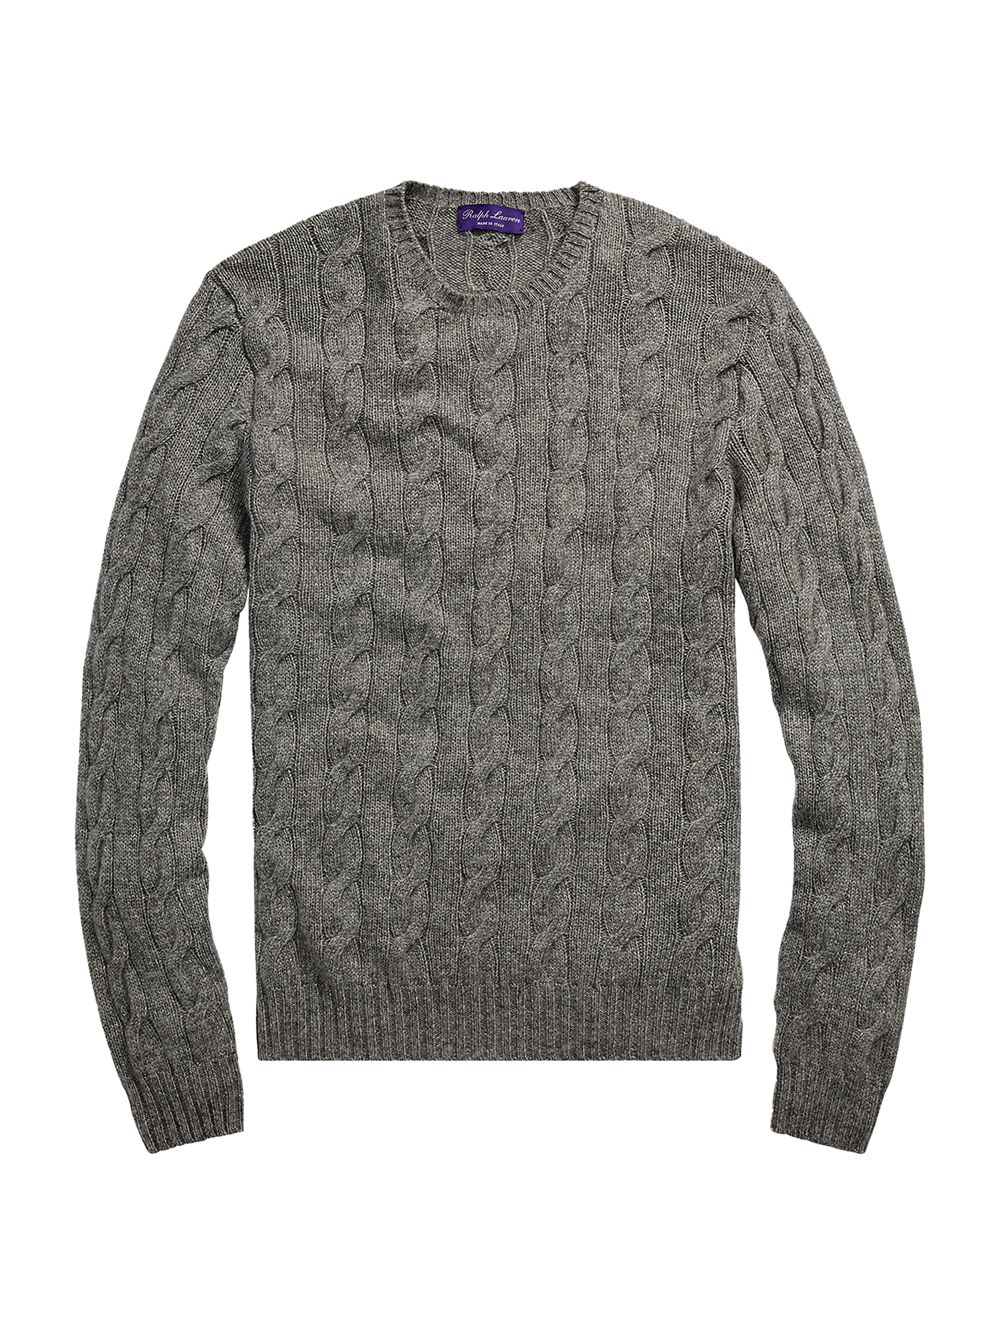 Вязаный кашемировый свитер Ralph Lauren Purple Label, серый